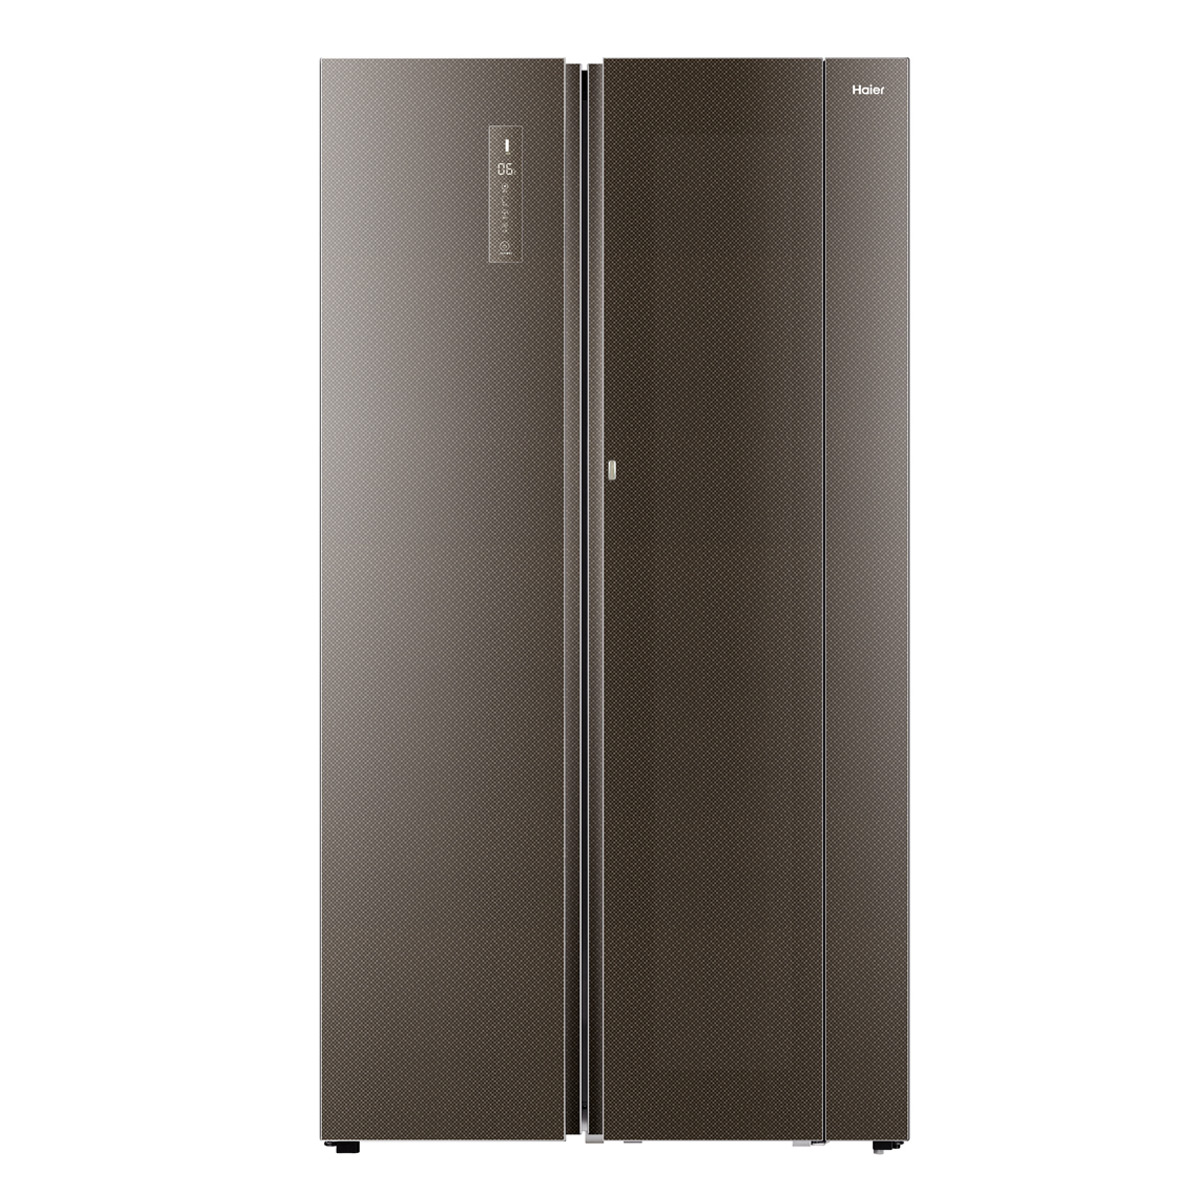 海尔Haier冰箱 BCD-800WDCN 说明书